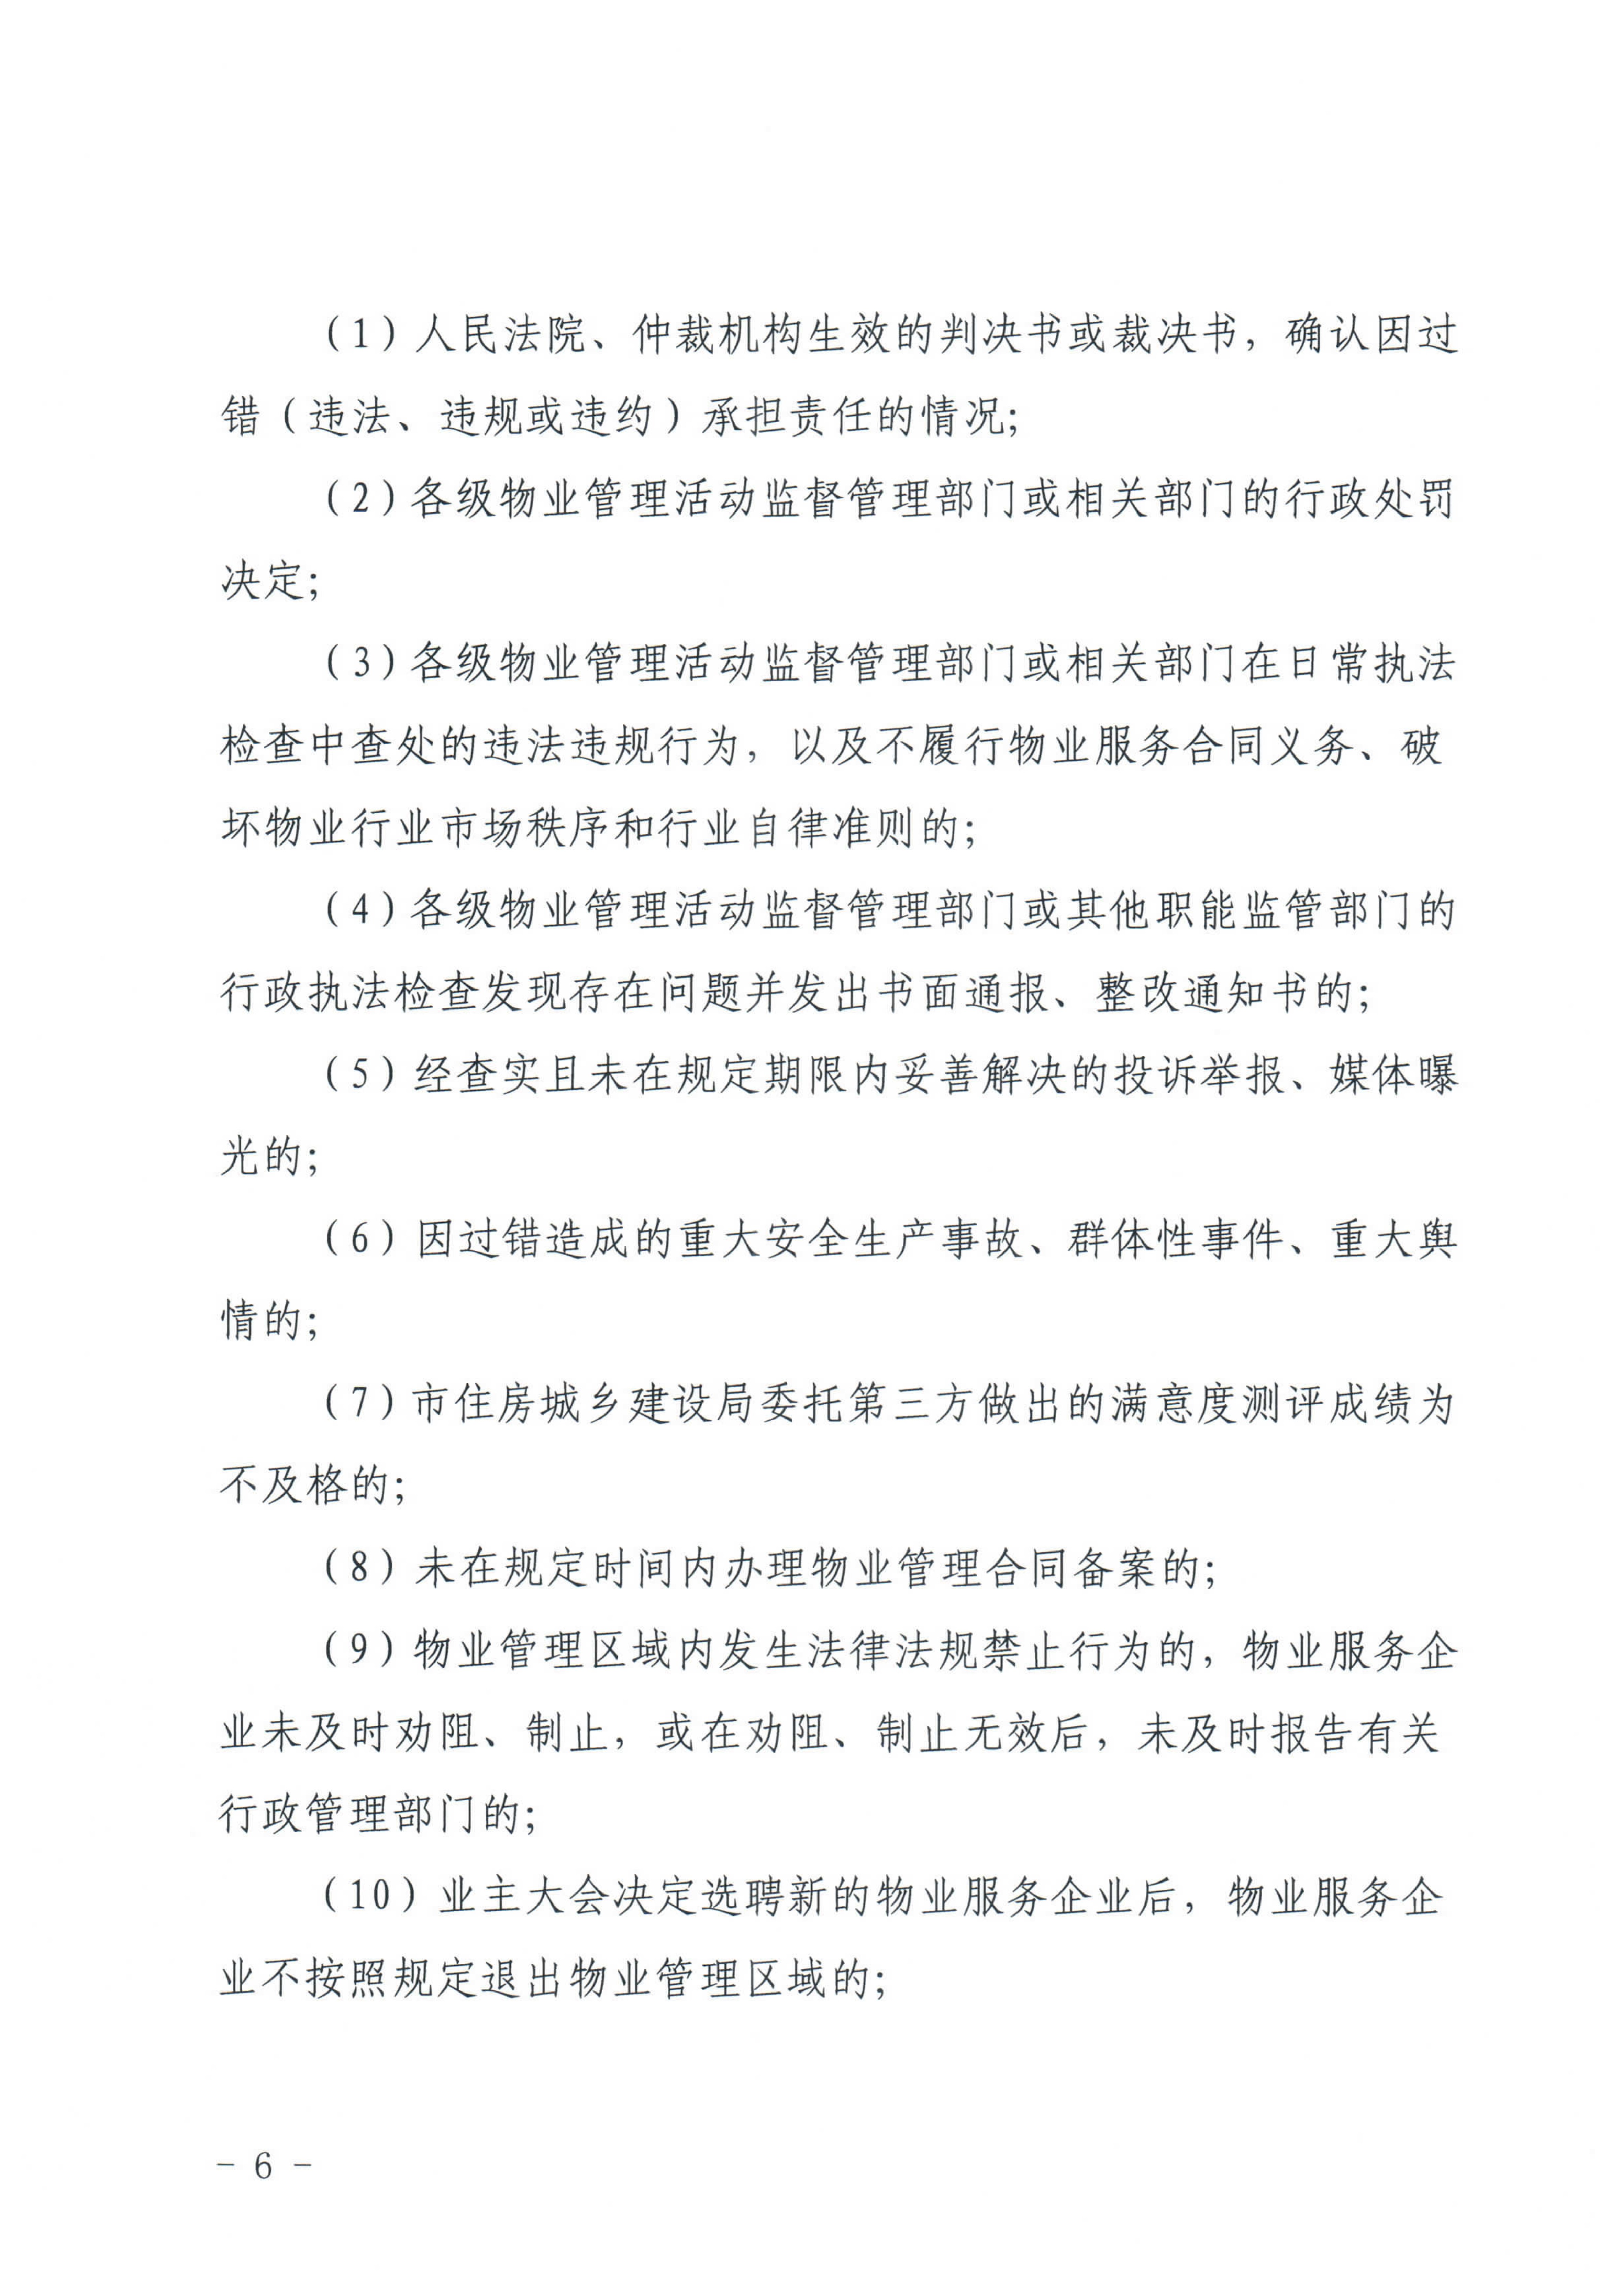 惠州市物业管理协会关于印发《惠州市物业管理活动信用档案管理办法》的通知_6.jpg